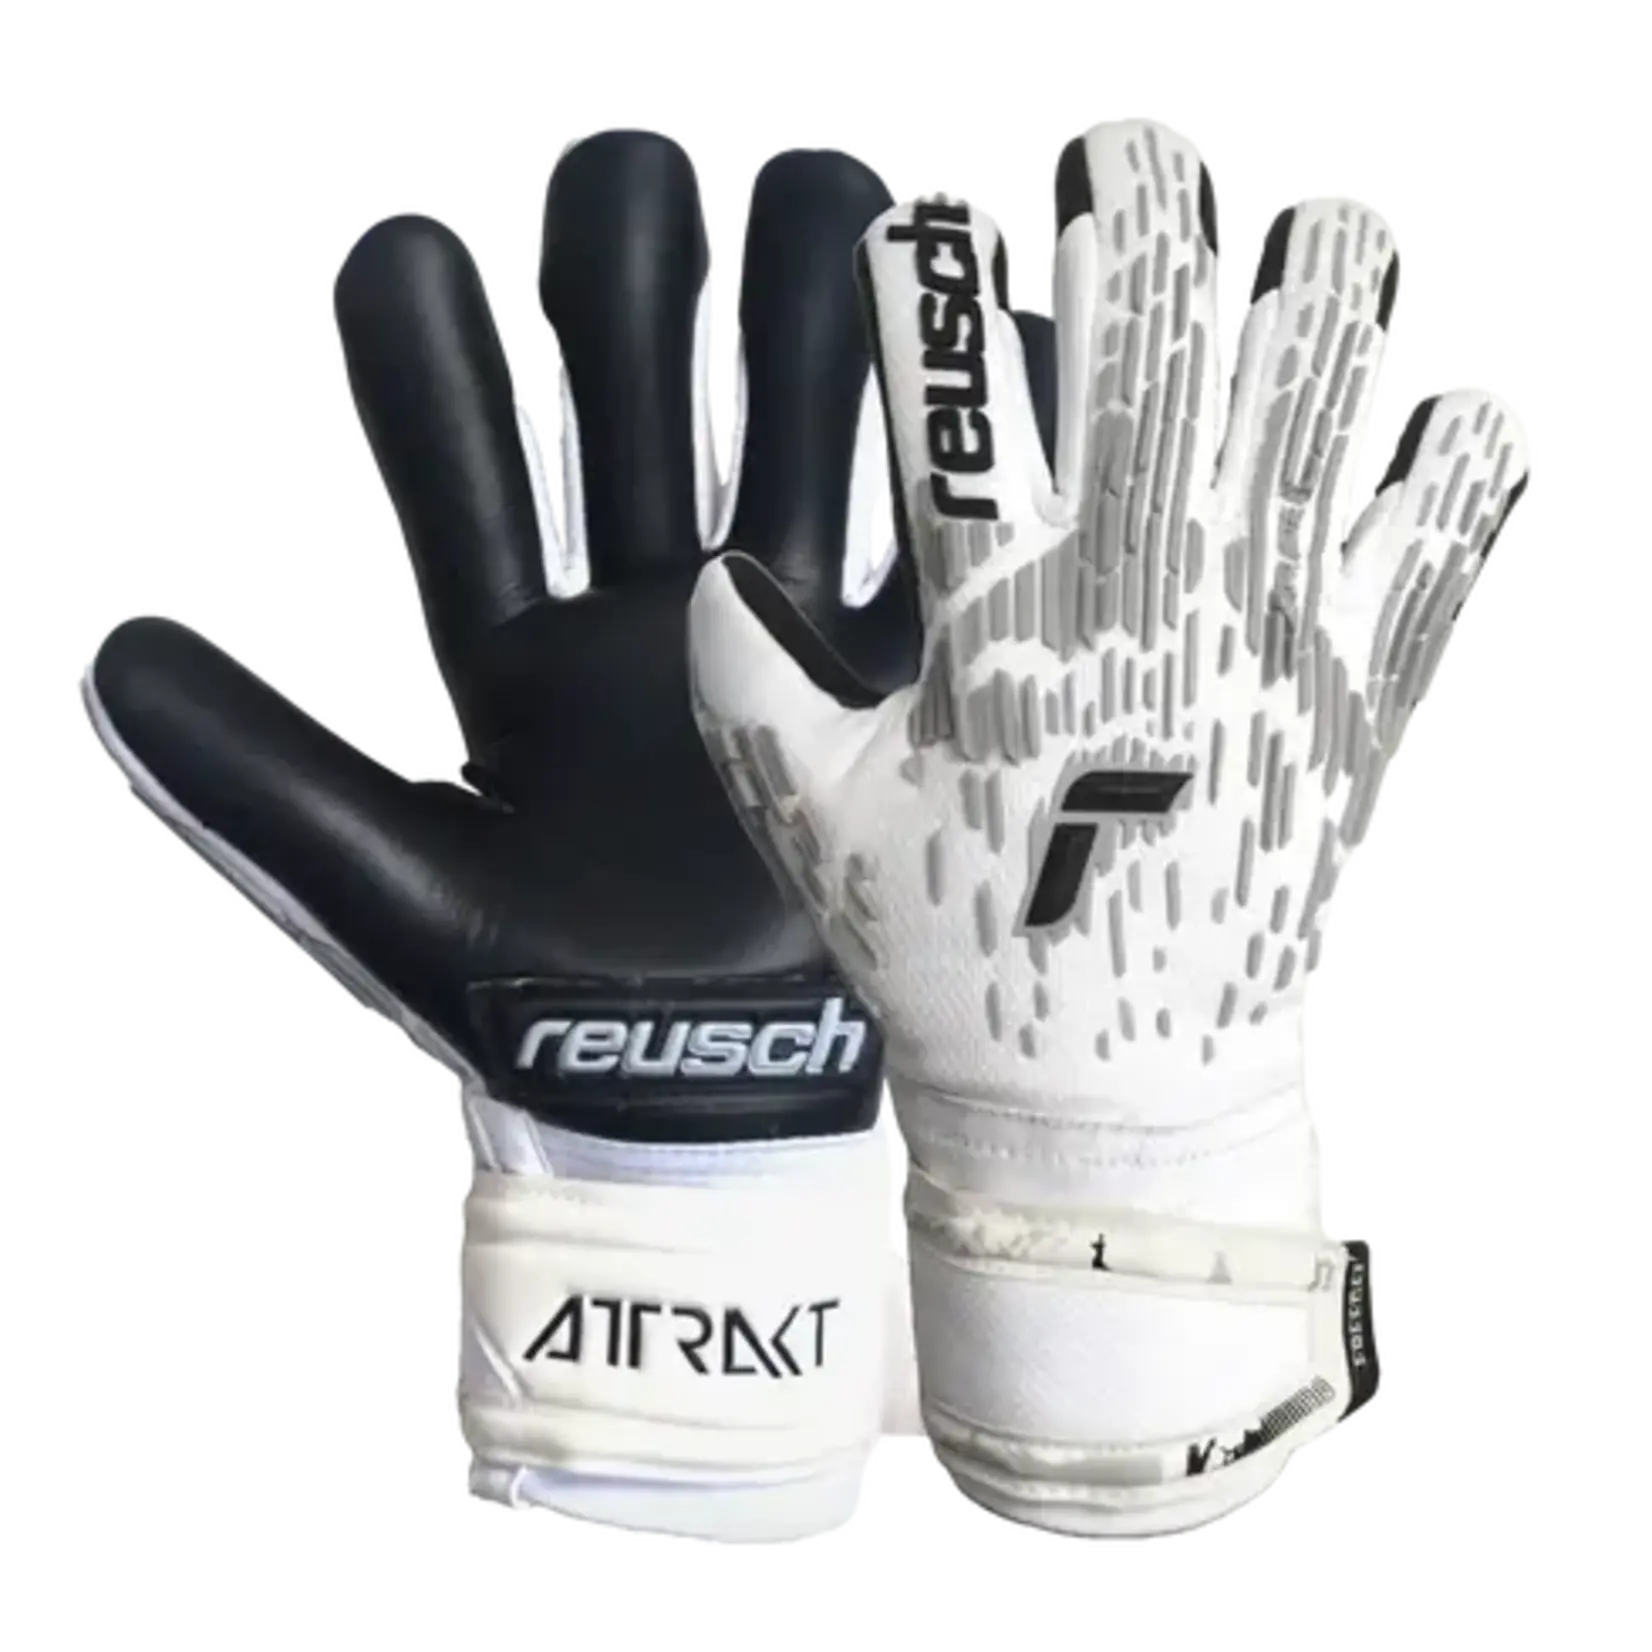 Reusch Attrakt Freegel Silver Finger Support Goal Glove